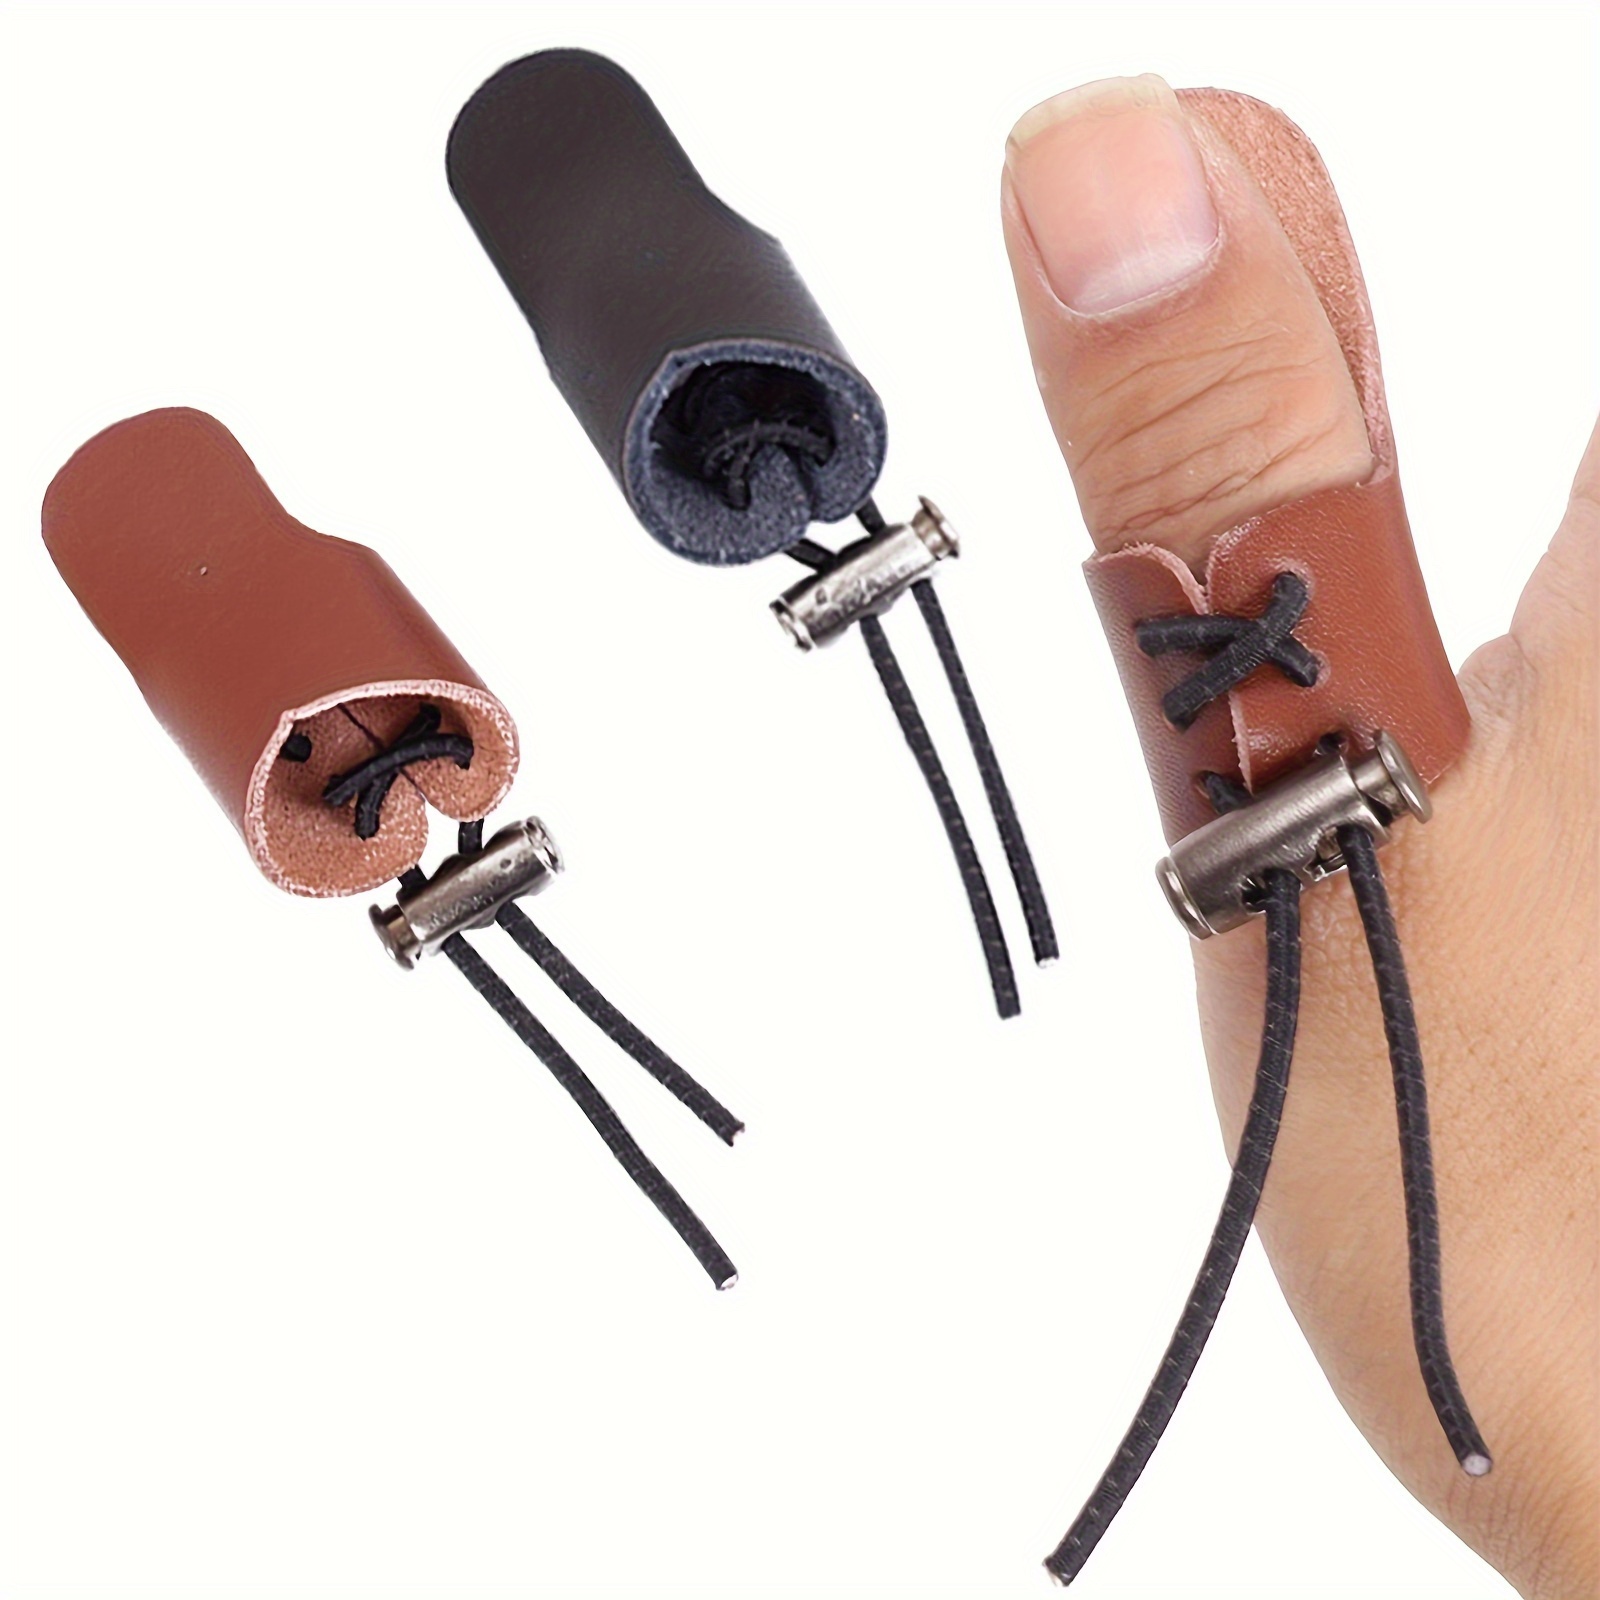 Onglets de tir Protège-doigts pour adultes Tir à l'arc Onglet à